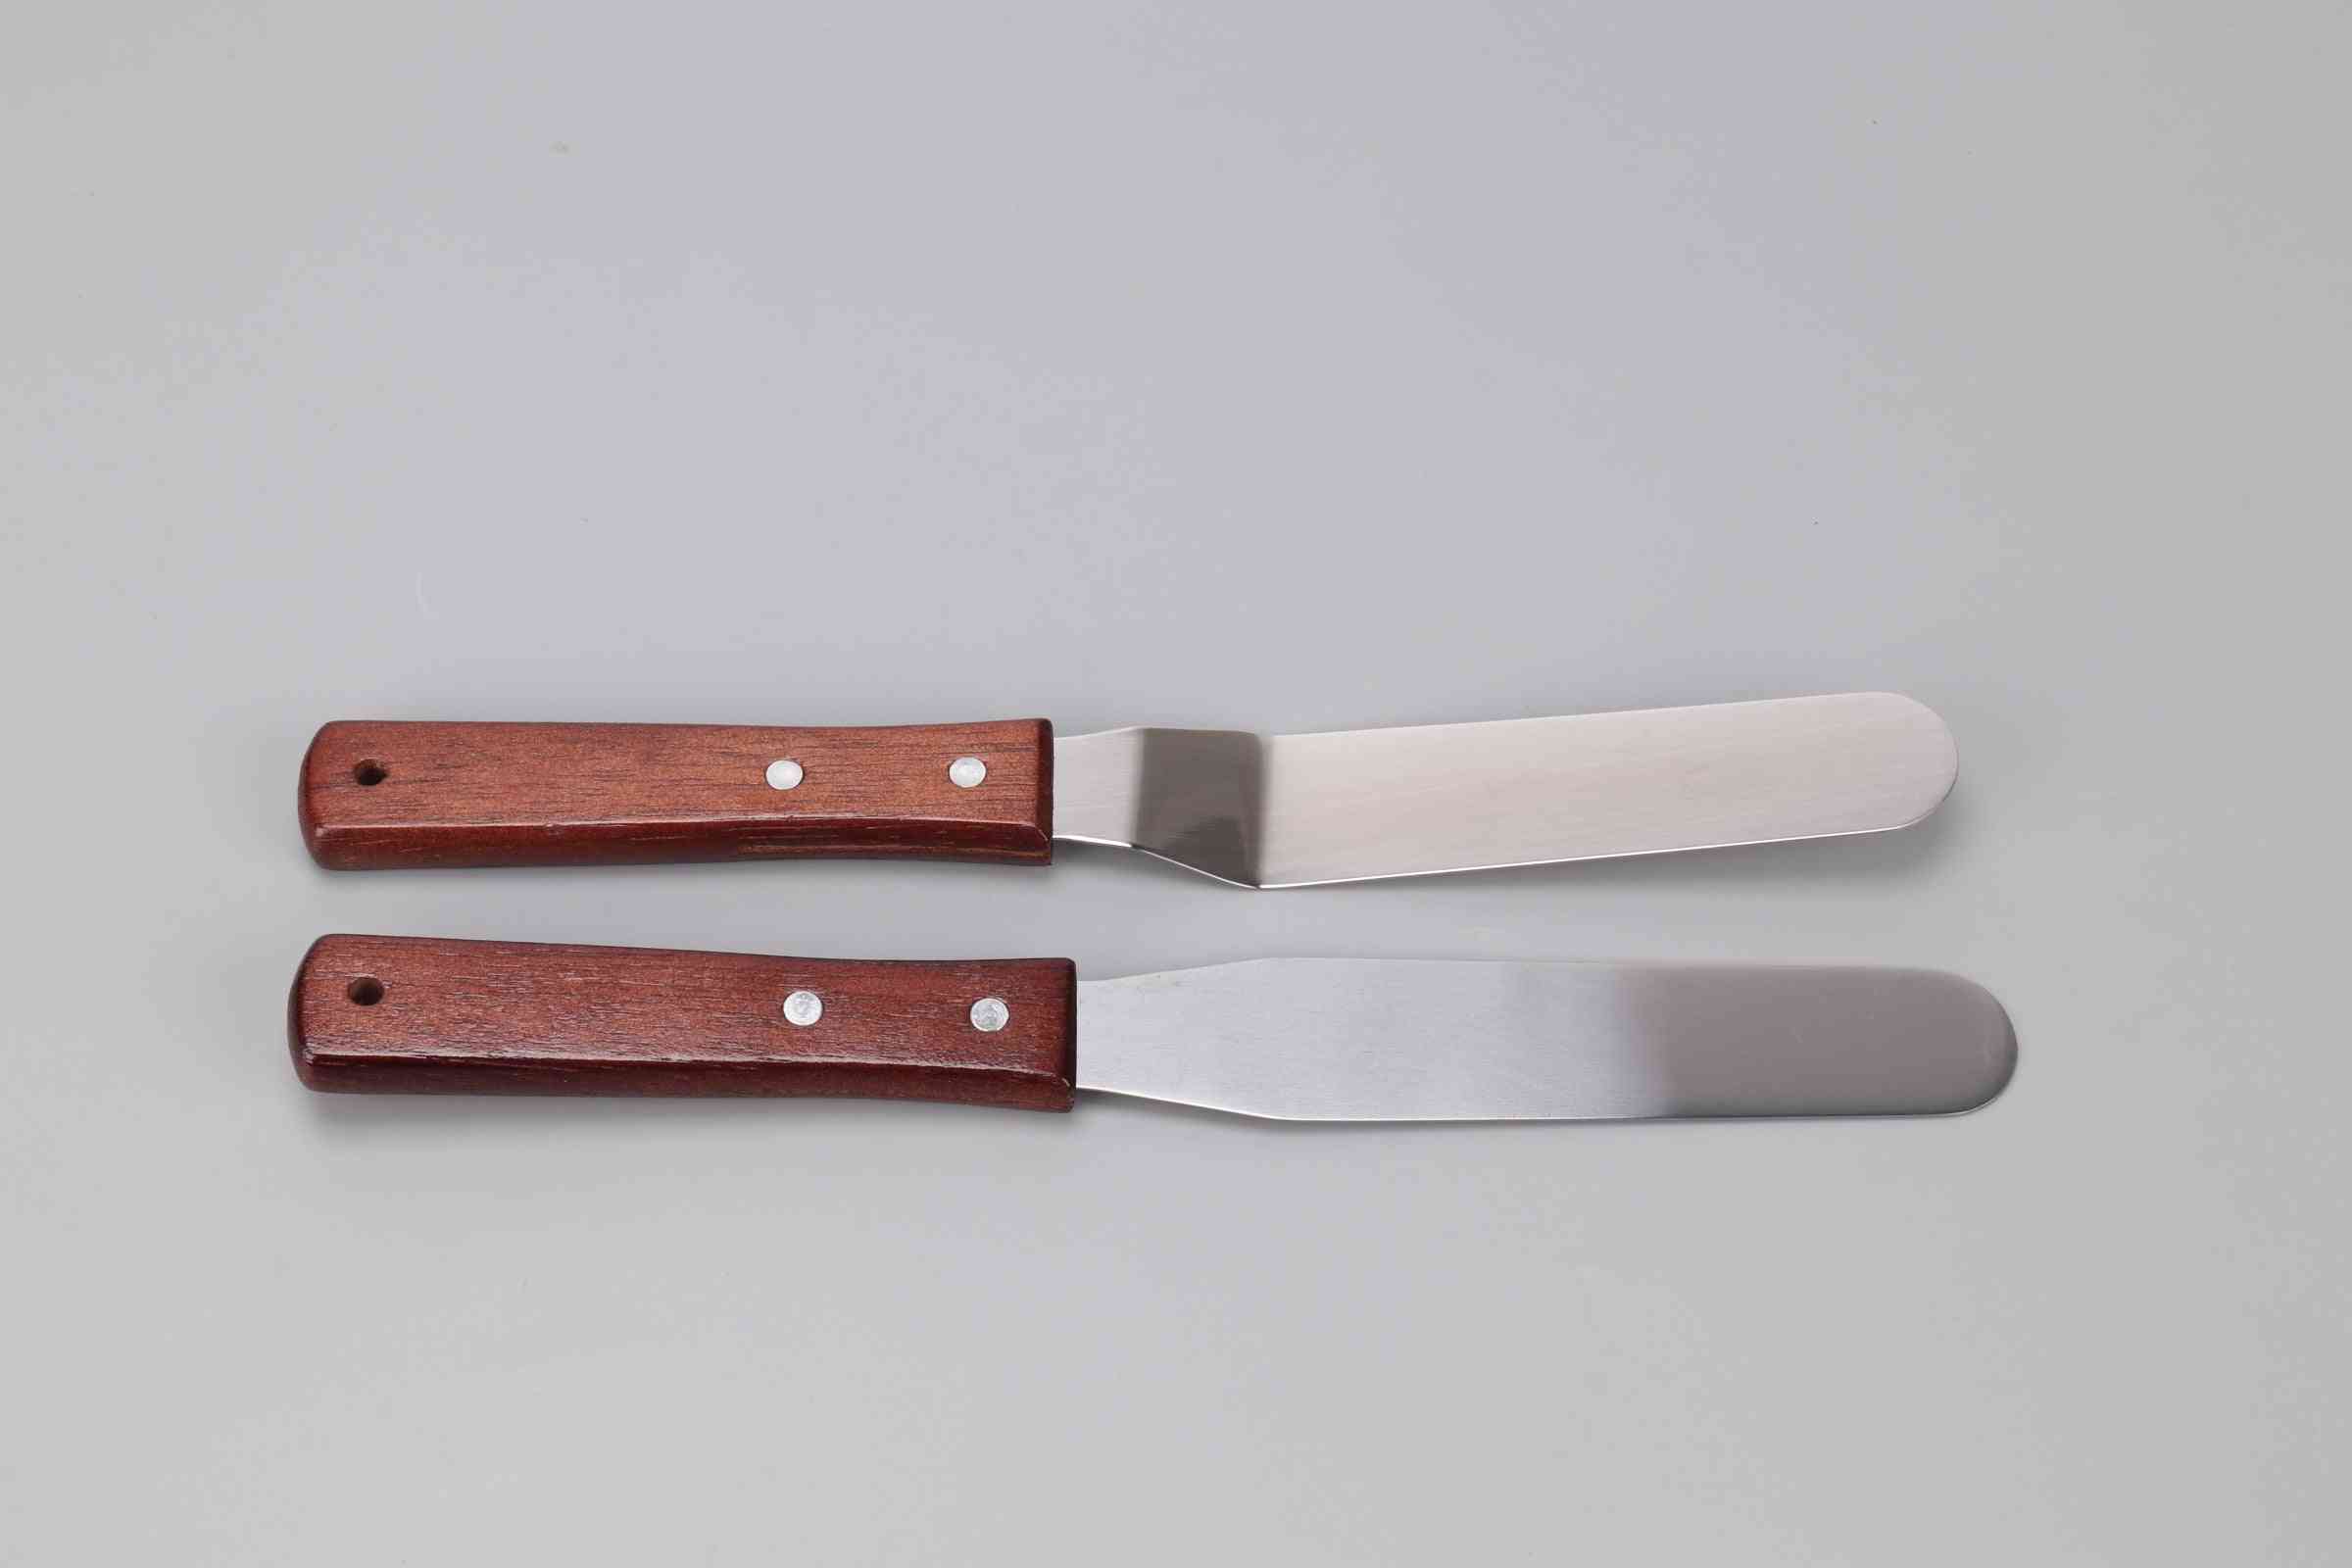 6stk bake spateldeigkniv silikonverktøysett brukt til matkvalitet, dekorering, konditorising glattere